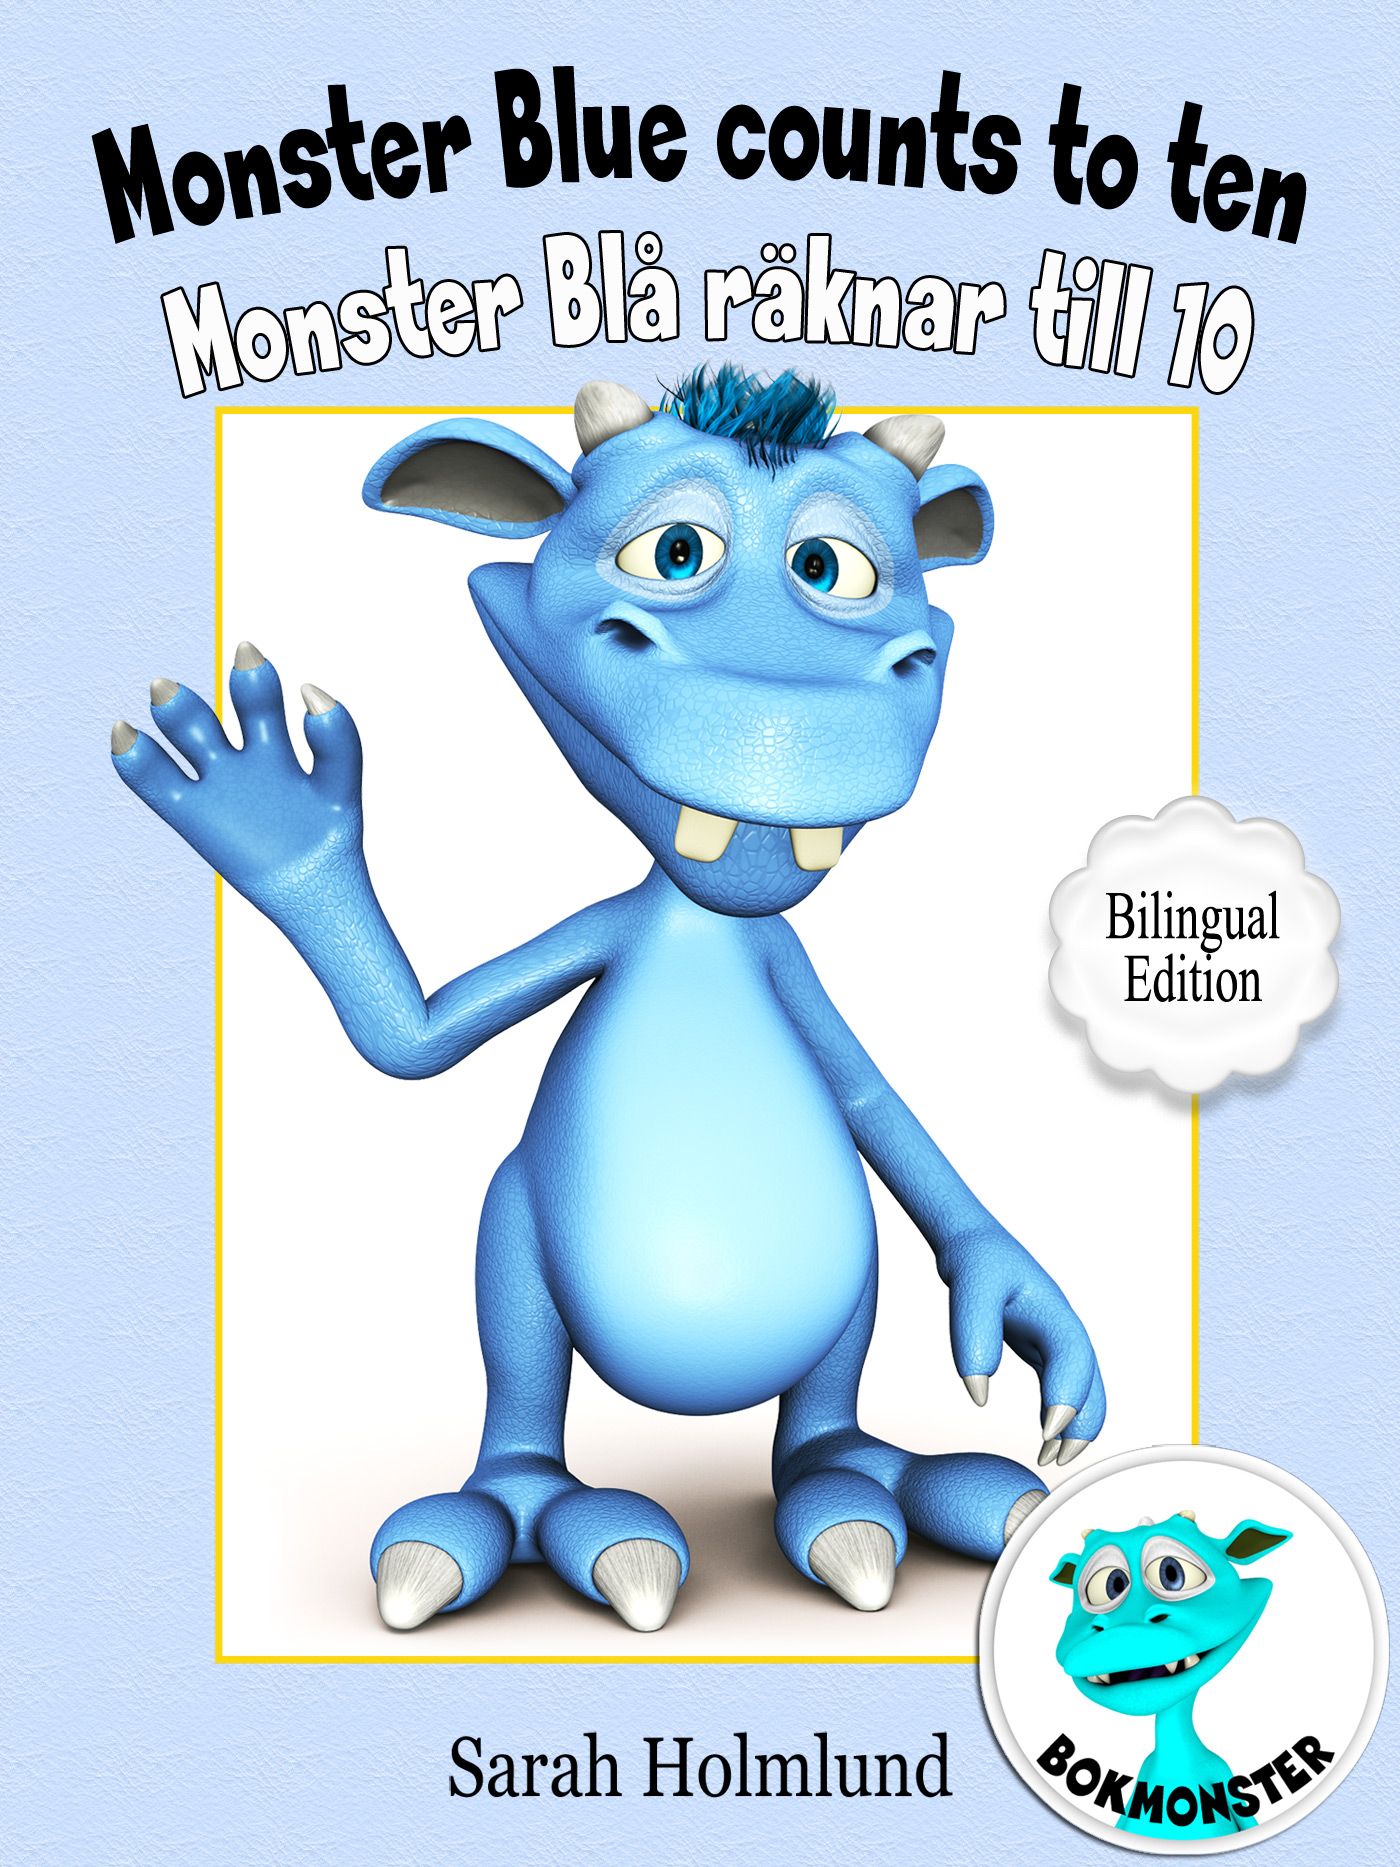 Monster Blue counts to ten  - Monster Blå räknar till 10 - Bilingual Edition, e-bog af Sarah Holmlund